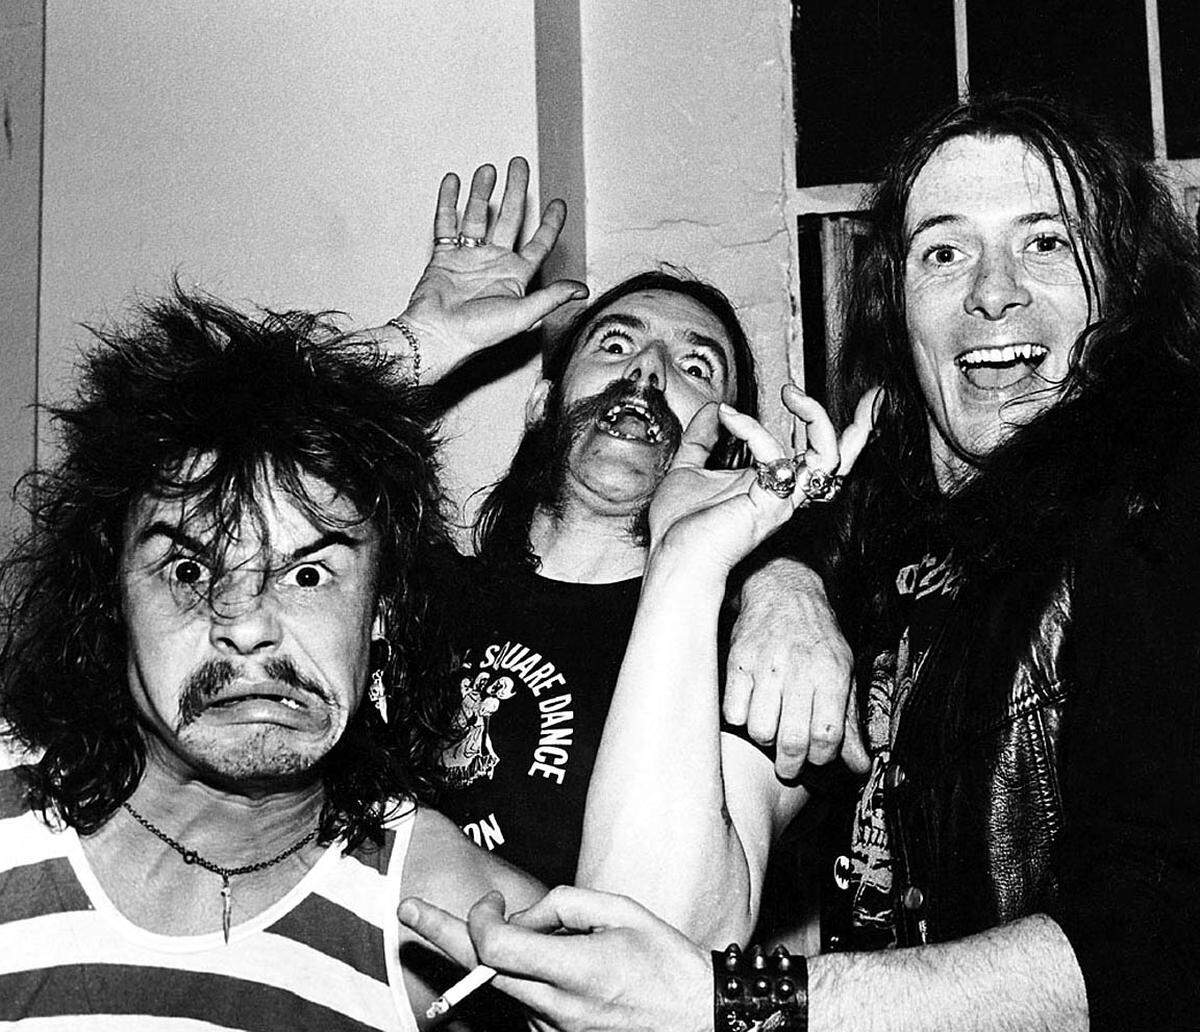 Drogen prägten von Beginn an auch Motörhead: Der Name ist ein Slang-Ausdruck für jemanden, der verrückt nach Speed ist, nach Geschwindigkeit oder Amphetaminen. "Okay, ich gebe zu, ich bin ein kleiner Speed-Freak, aber ich rühre kein Heroin an", sagte er 1972. "Deshalb lebe ich, und meine Kumpels sind tot." Foto: Motörhead-Besetzung: Phil Taylor, Lemmy und "Fast" Eddie Clarke